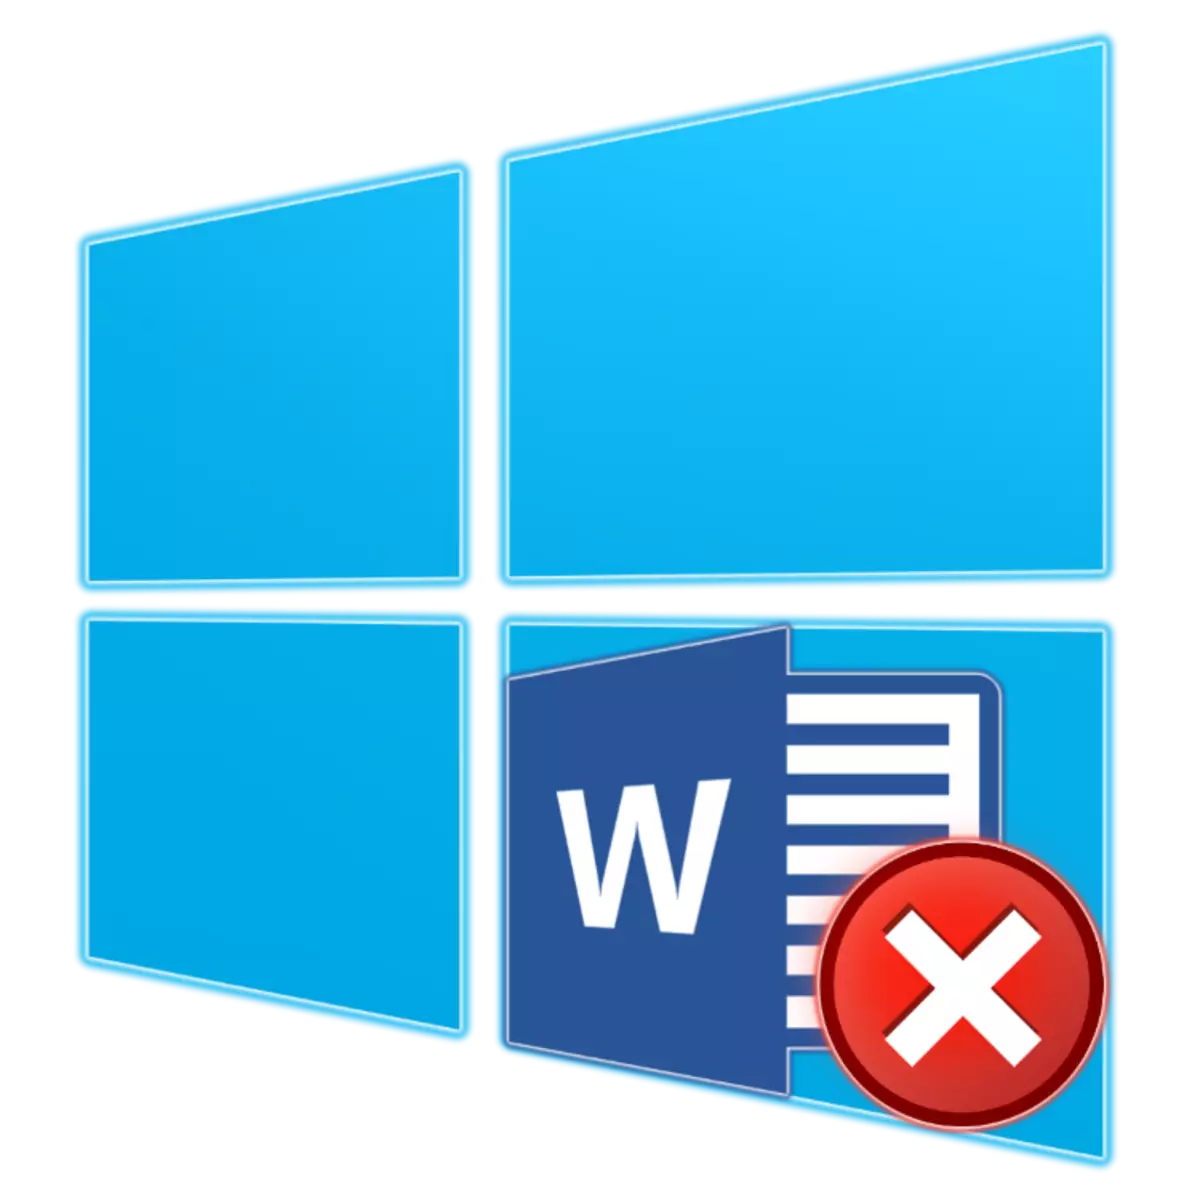 Varför ordet inte fungerar i Windows 10